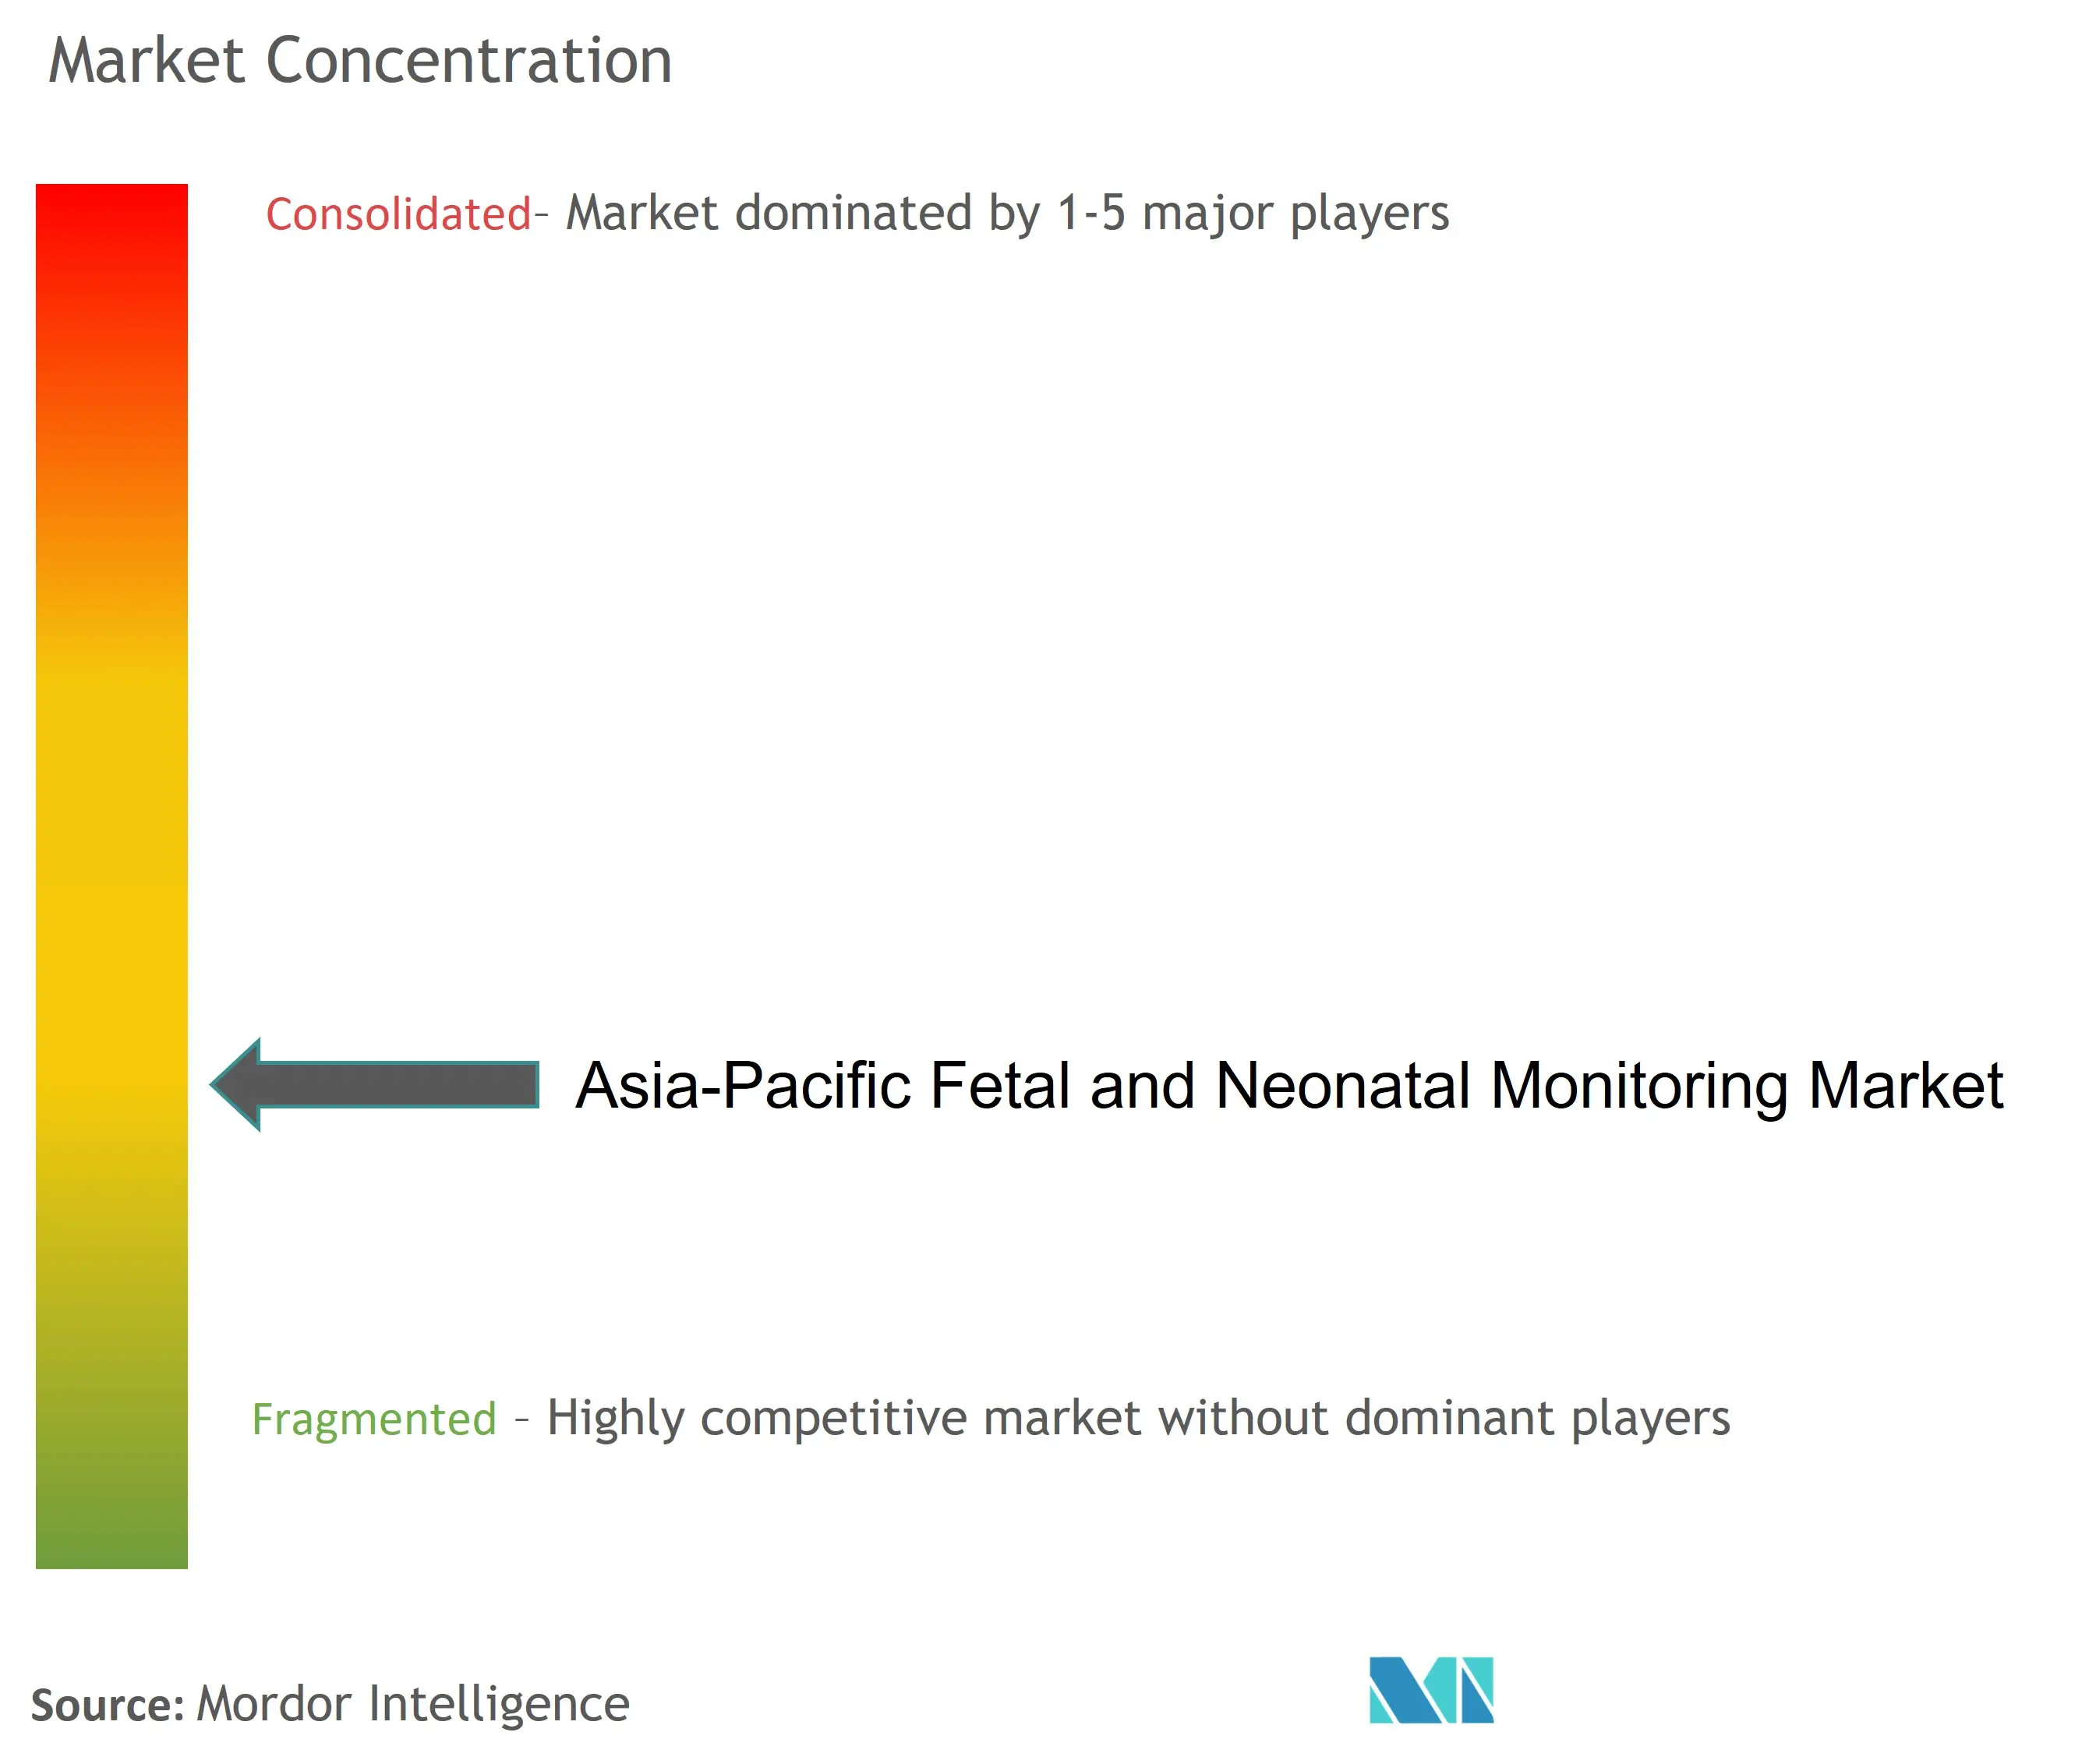 Marktkonzentration für fetale und neonatale Überwachung im asiatisch-pazifischen Raum